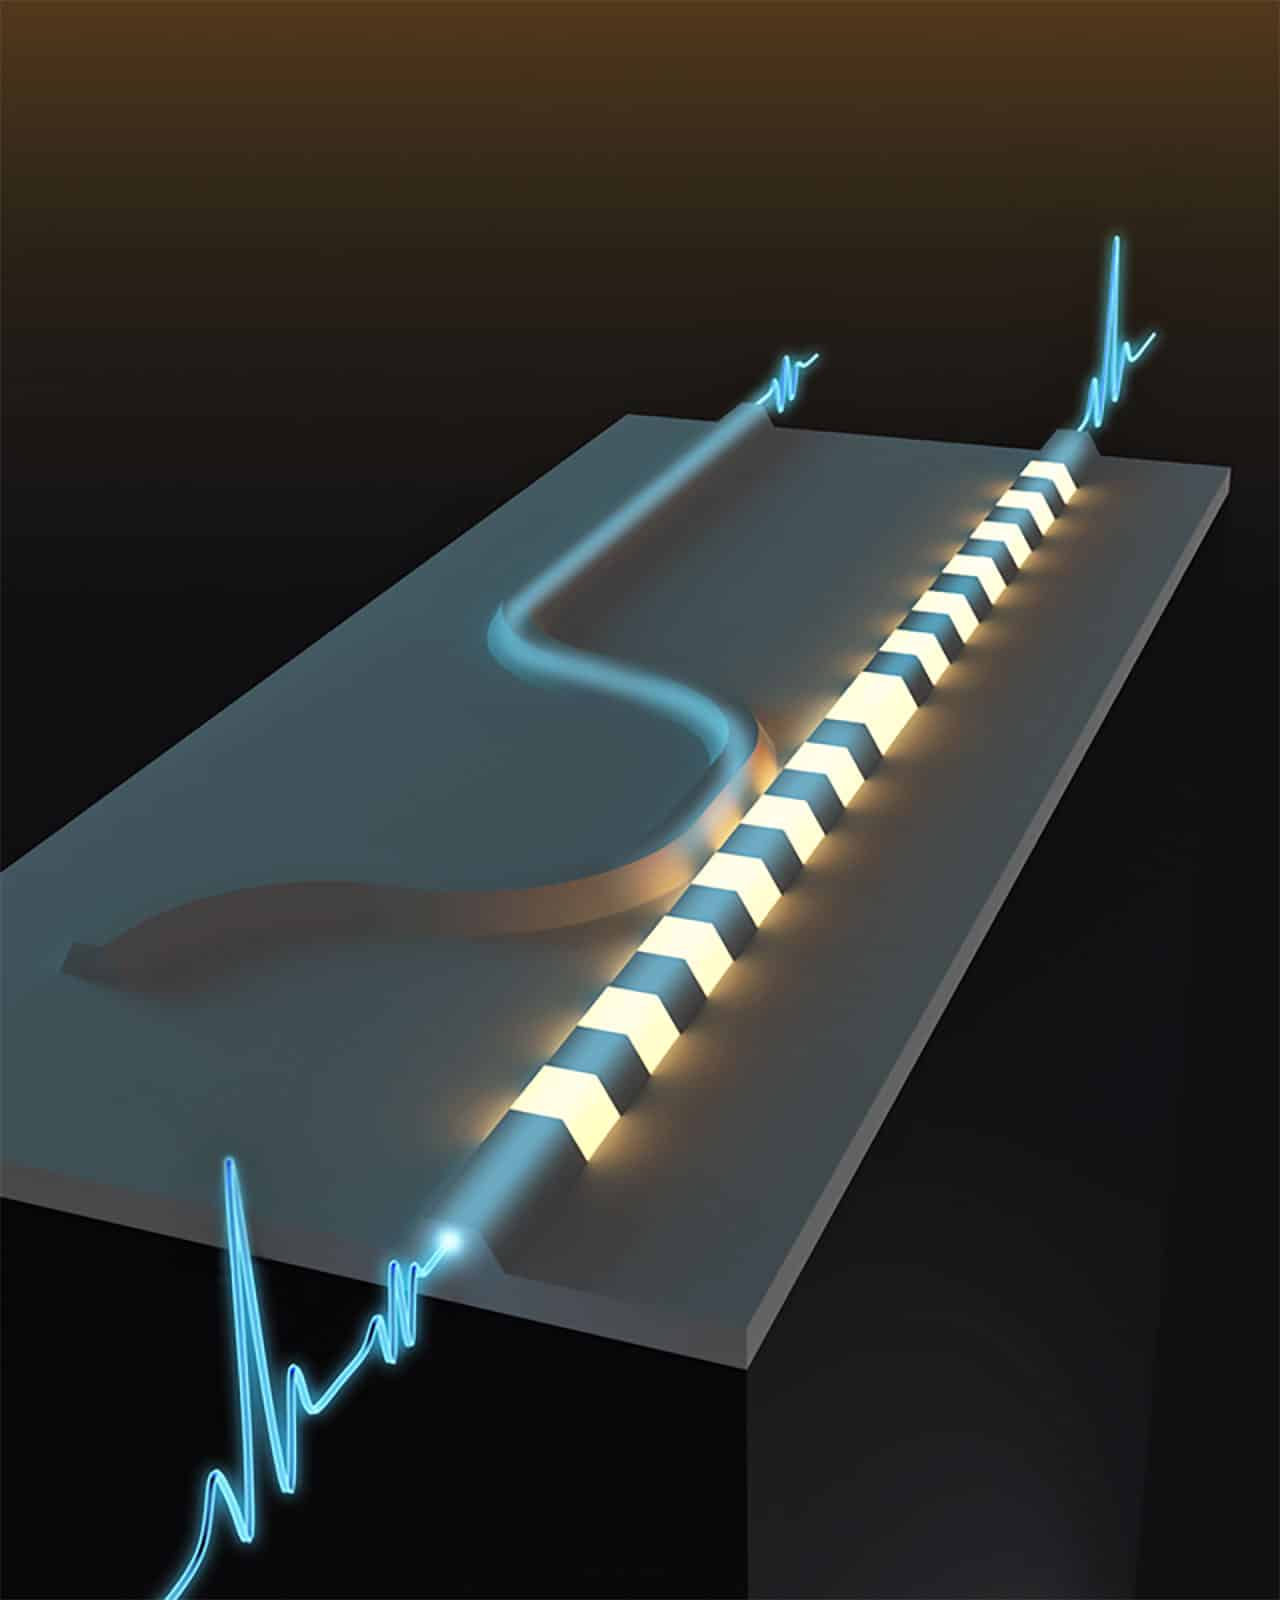 Cientistas da Caltech desenvolveram um switch usando componentes ópticos